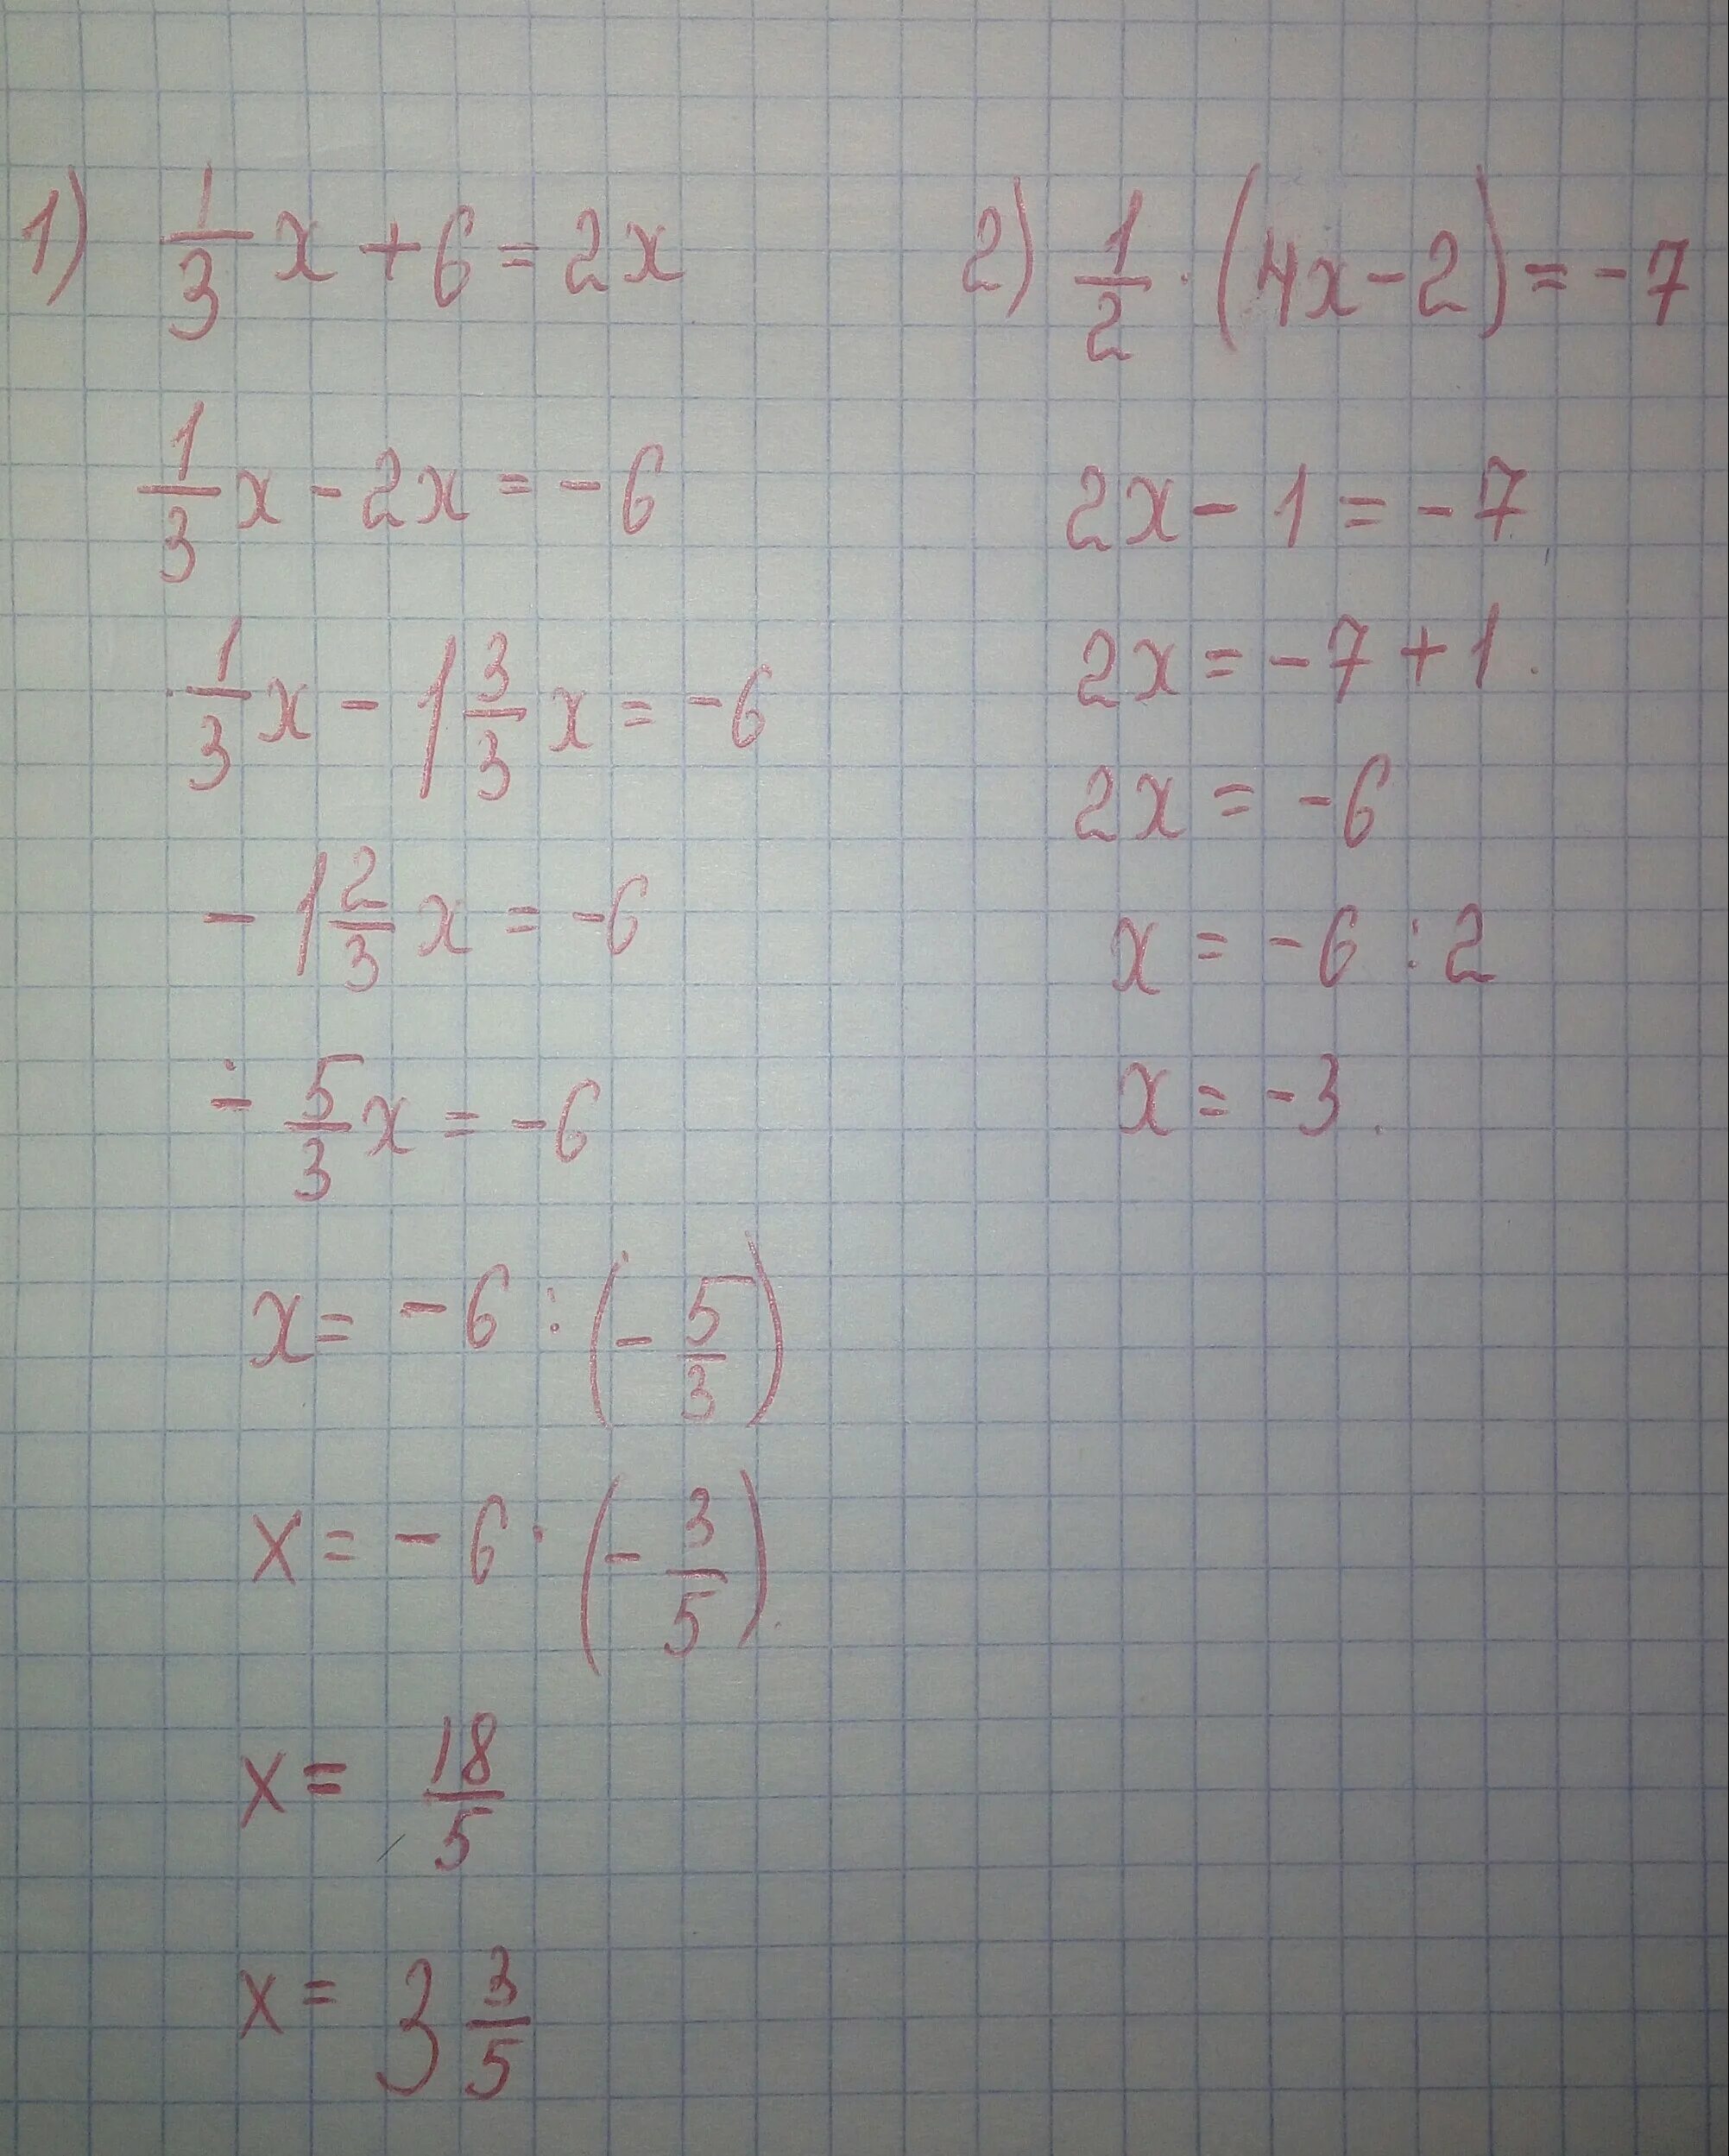 63:(14-X)=7. X2-2x-63. 63x63 решения. Уравнение 63 14-х 7. 3 5 x 63